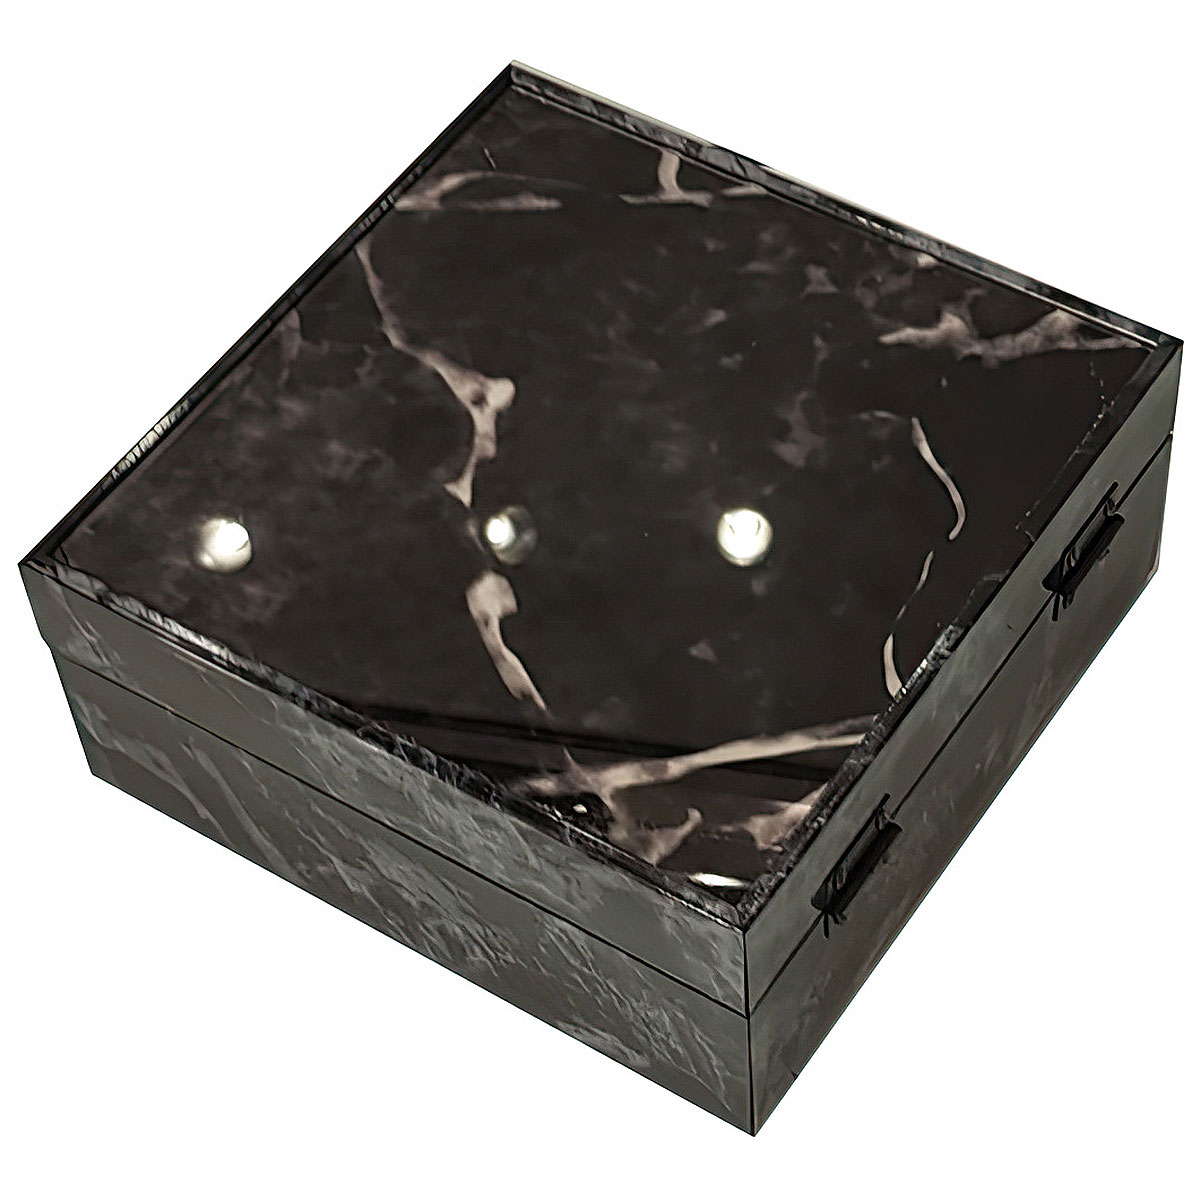 Шкатулка Ozverler marble black 20x20см Ozverler DK-5673, цвет черный